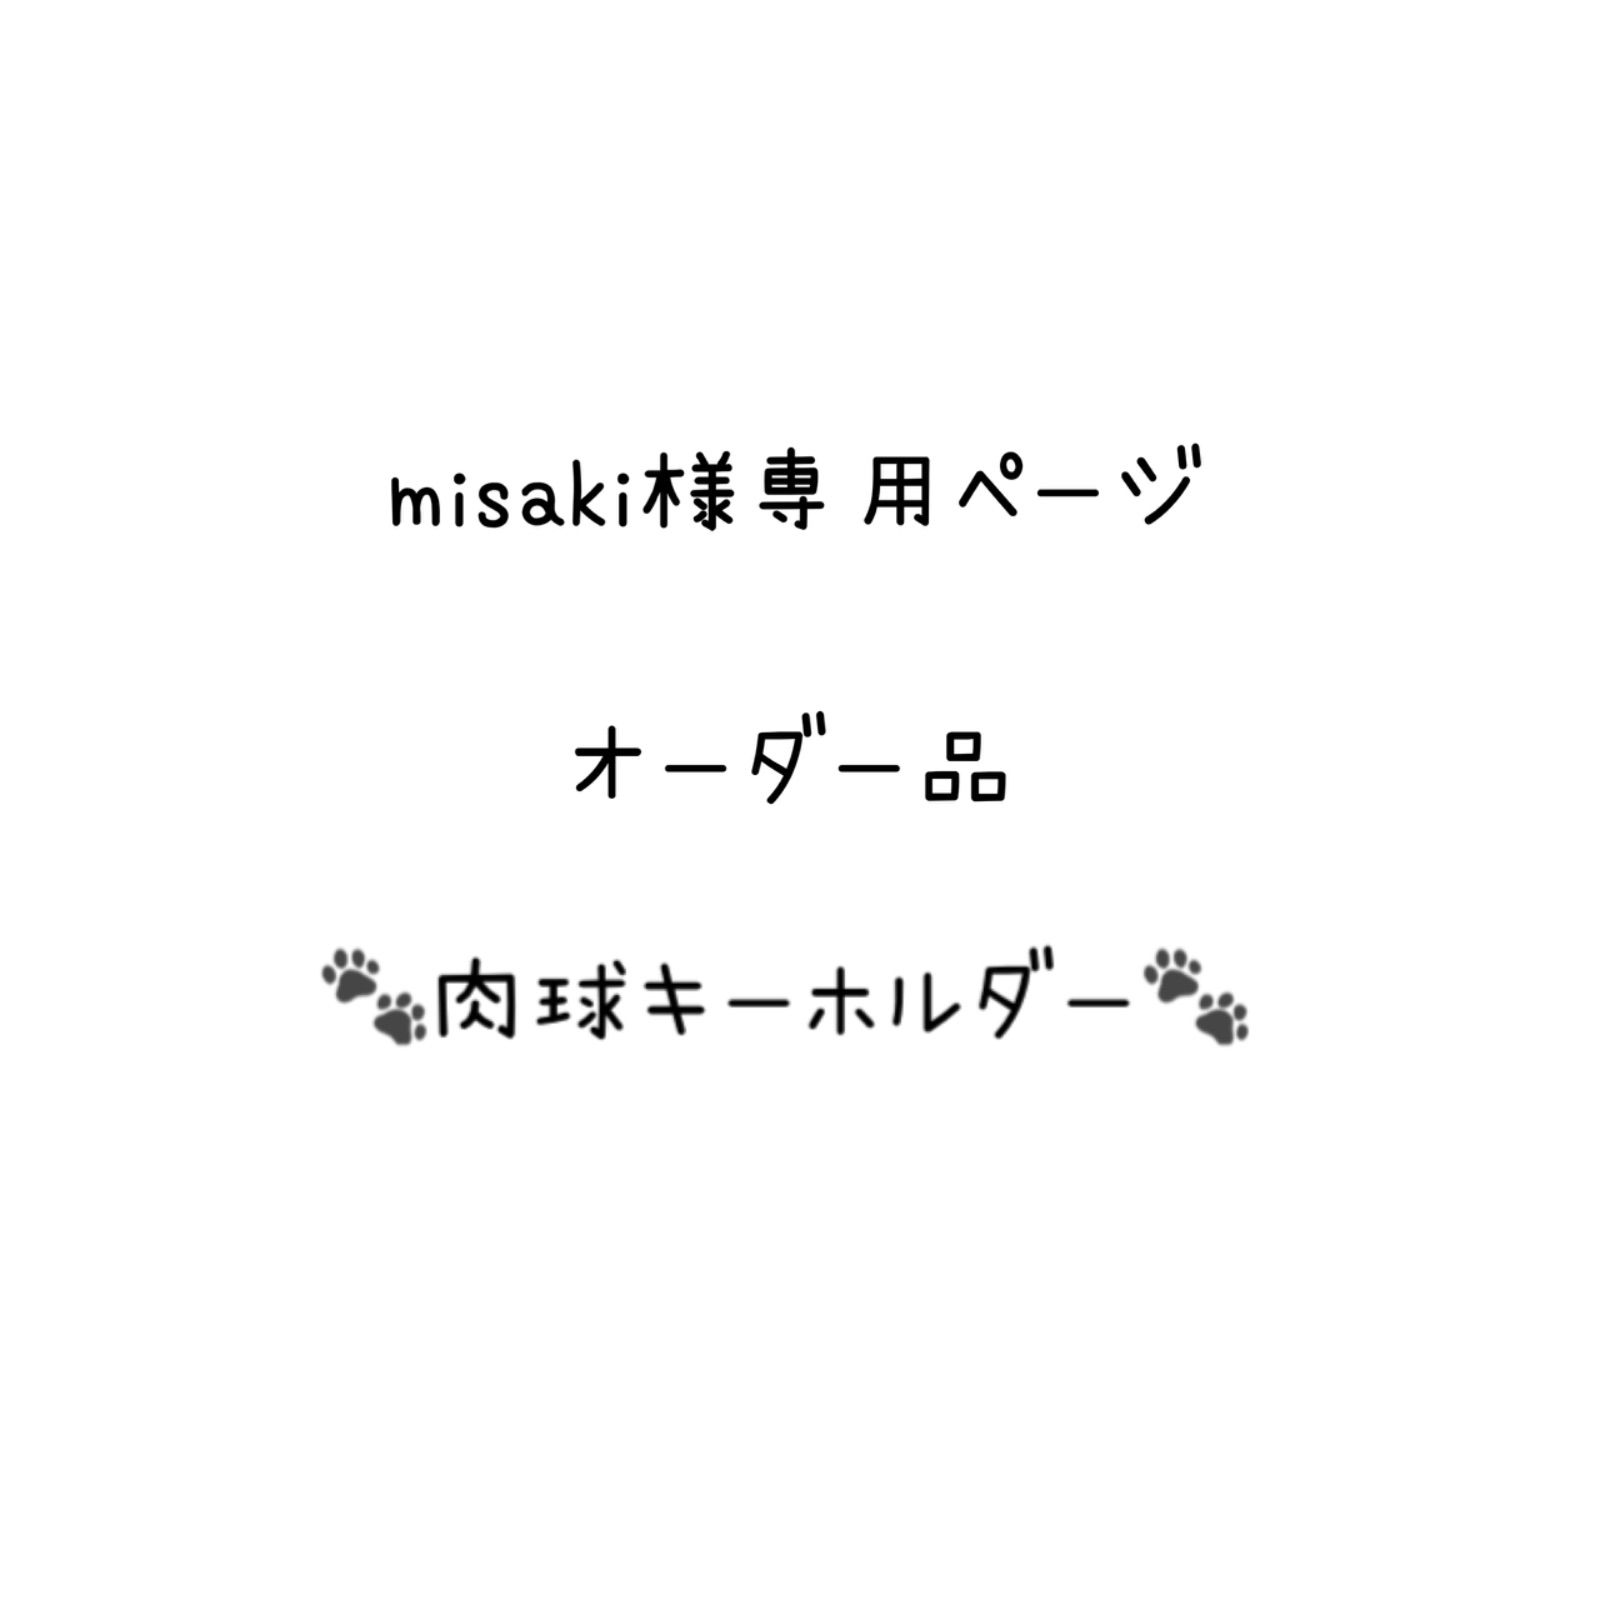 misaki様専用 オーダー品 🐾キーホルダー🐾2点 - Lotus - メルカリ